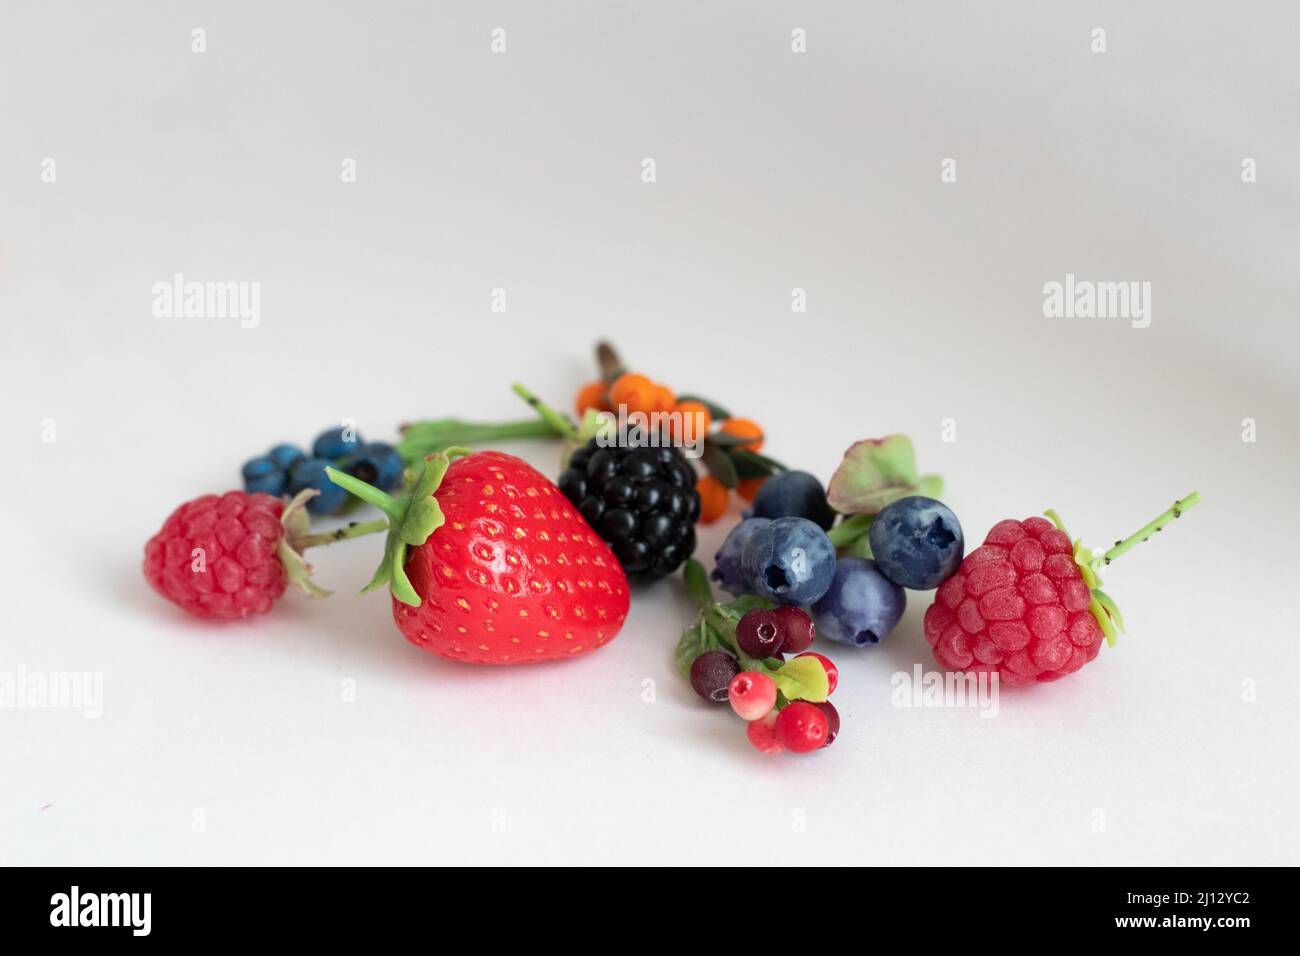 Miniaturfiguren von Erdbeeren, Brombeeren, Himbeeren, Blaubeeren, Heidelbeeren, Preiselbeeren und Preiselbeeren Stockfoto